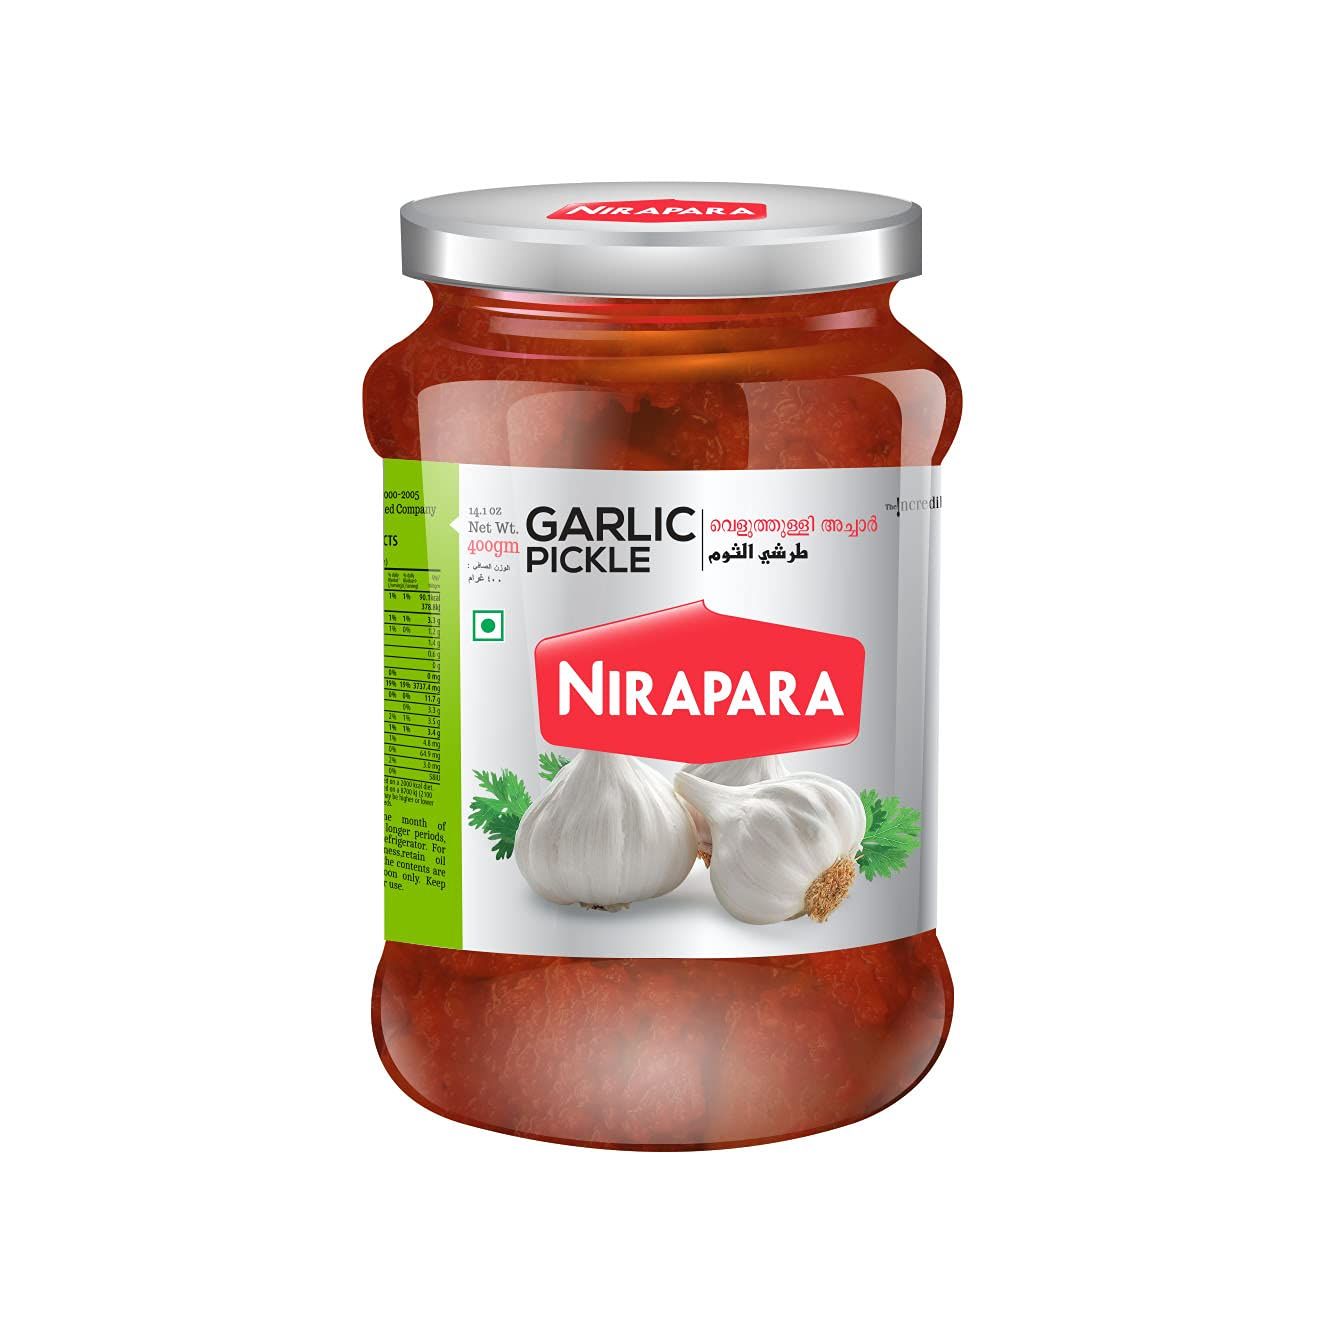 Nirapara Garlic Pickle Image